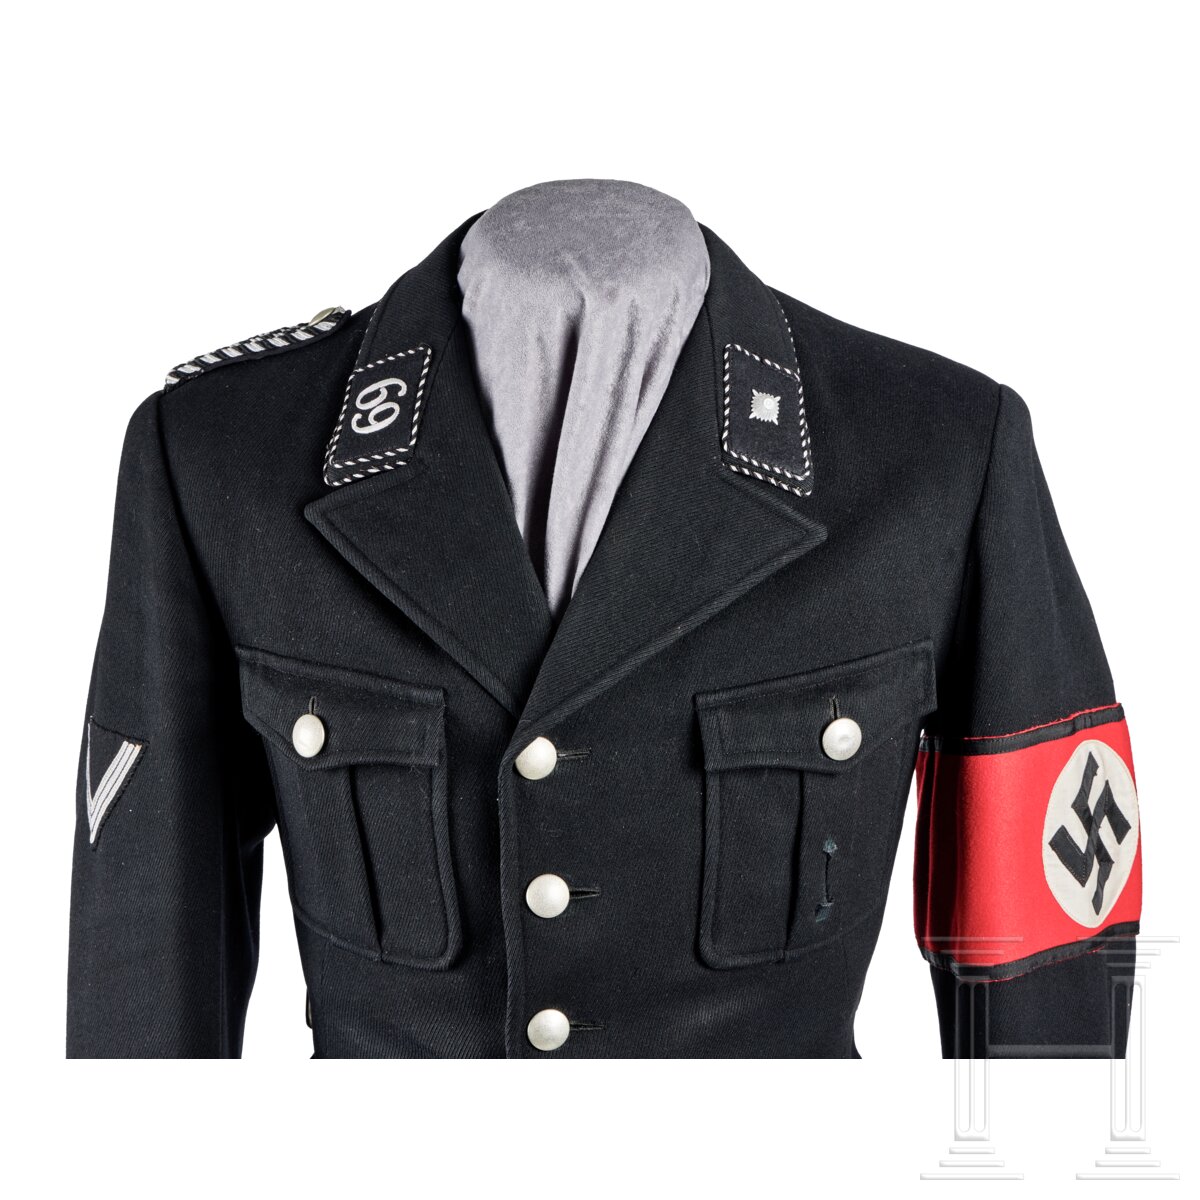 A Service Uniform for a Unterscharführer of Standarte 69 “Hagen/Westfalen” - Image 4 of 18